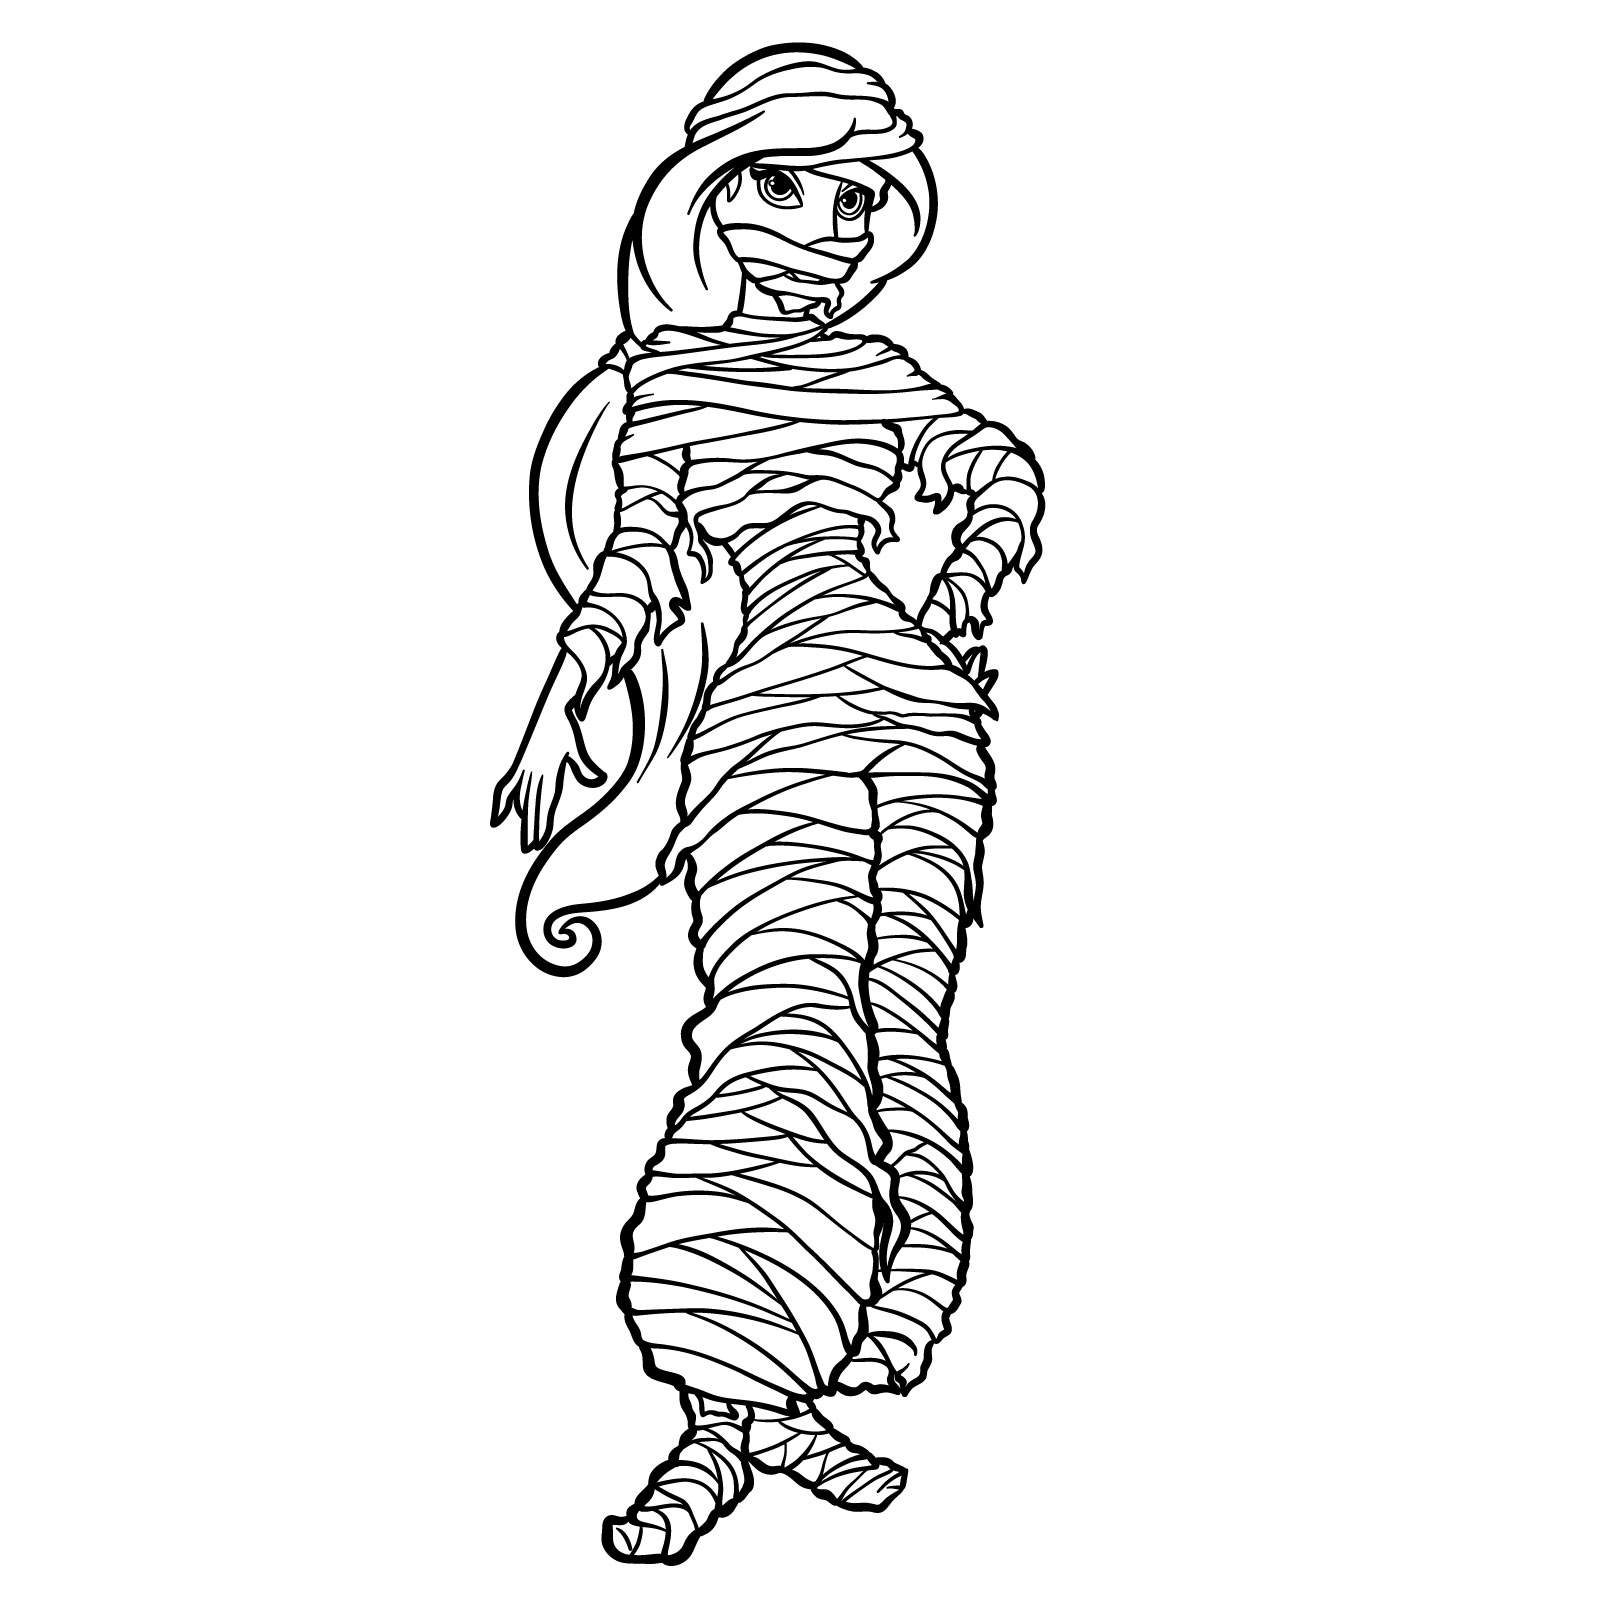 How to Draw Halloween Jasmine as mummy - final step